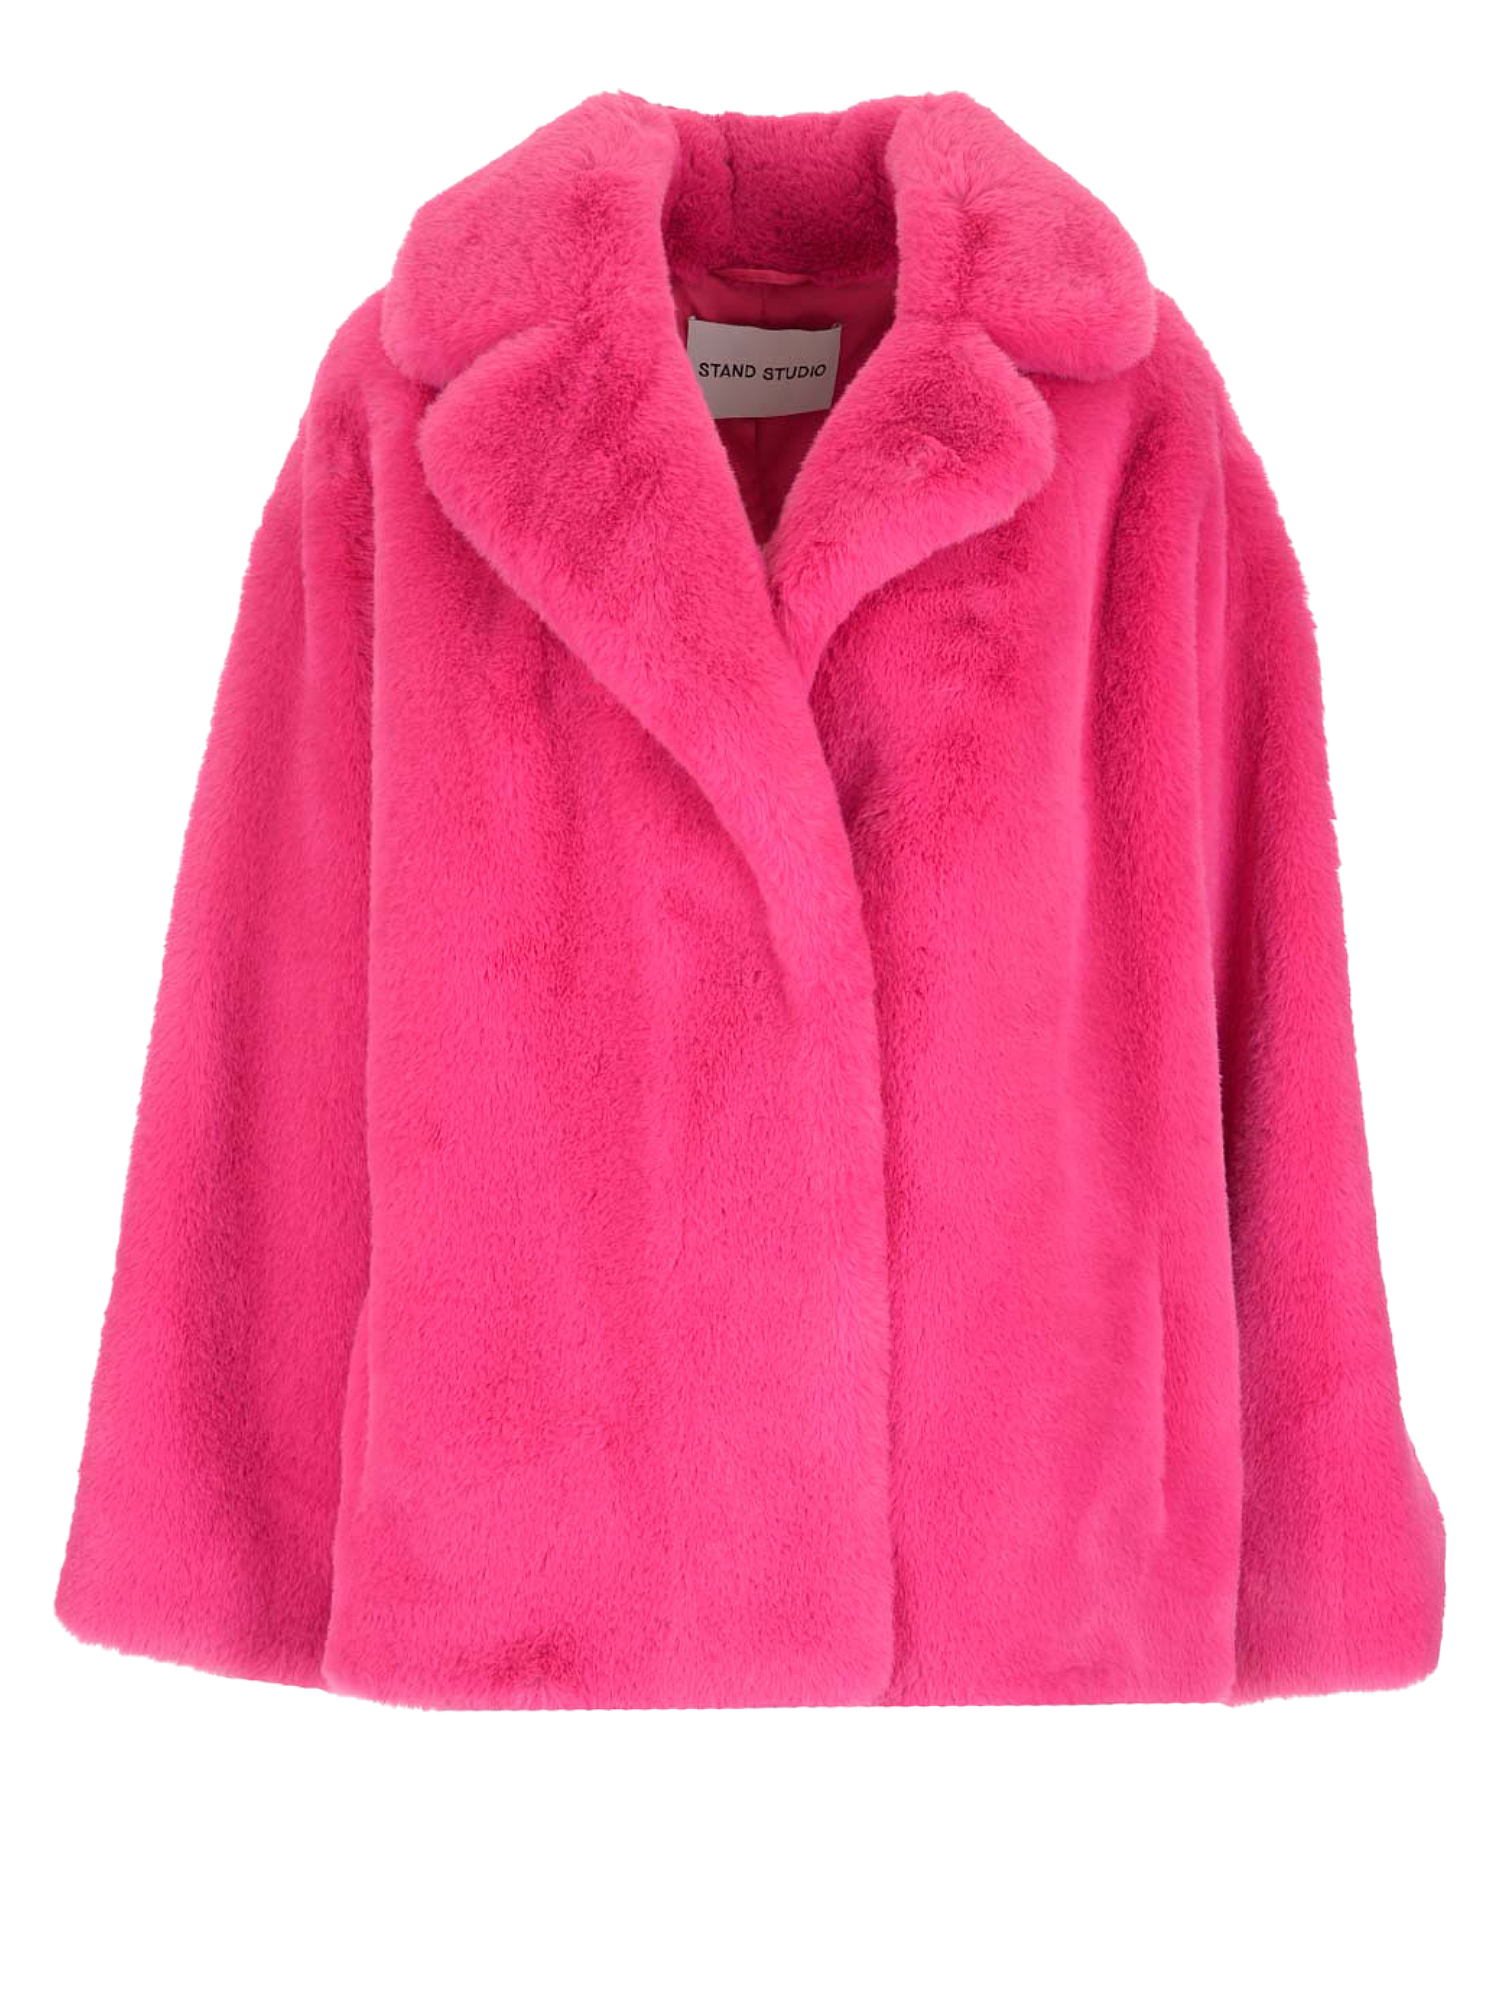 Manteaux Et Blousons Pour Femme - Stand - En Synthetic Fibers Pink - Taille:  -